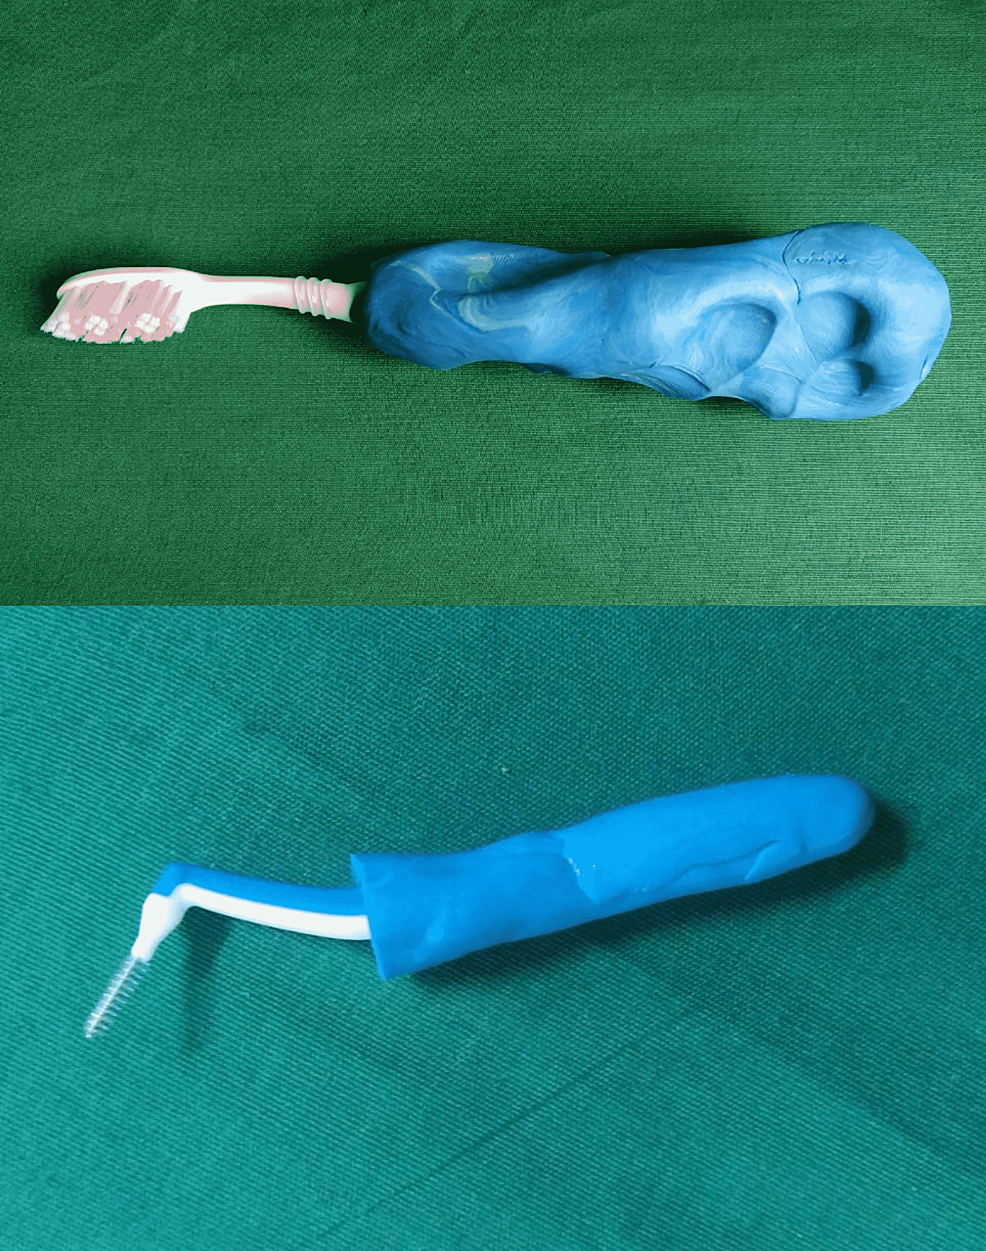 Molded-handle-around-toothbrush-and-interproximal-brush.